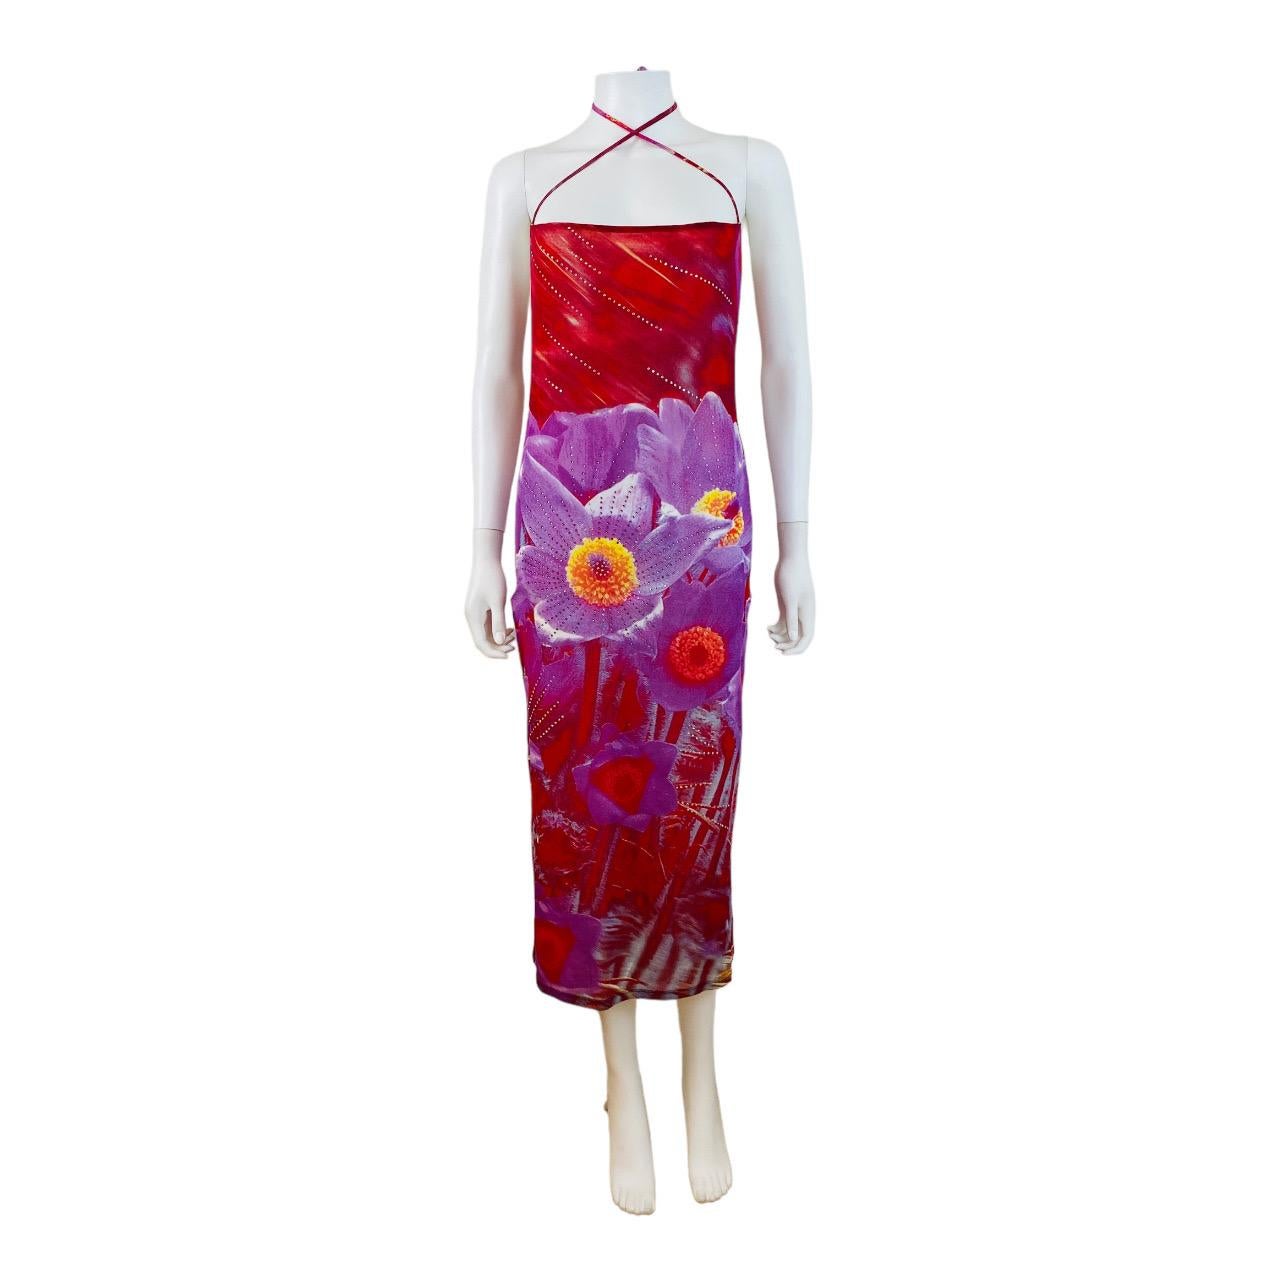 S/S 2000 Roberto Cavalli Kleid (hier an einer Schaufensterpuppe befestigt)
Kühnes rotes Mesh-Gewebe mit übergroßem lilafarbenem Blumendruck, der durchgehend mit Kristallen verziert ist
Quadratischer Schnitt im Brustbereich mit Trägern, die sich im